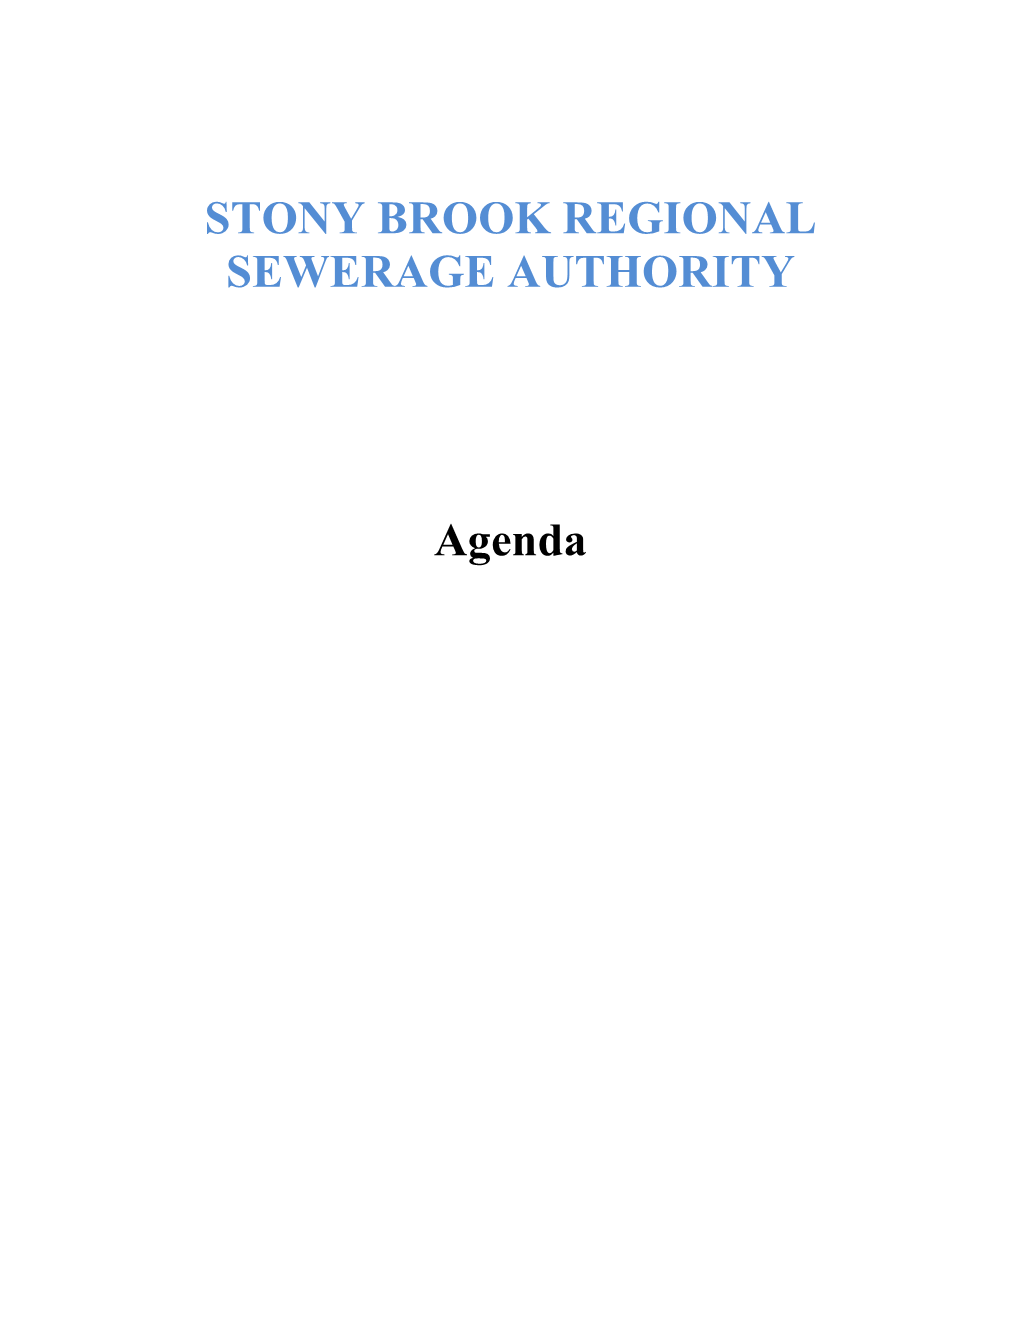 STONY BROOK REGIONAL SEWERAGE AUTHORITY Agenda